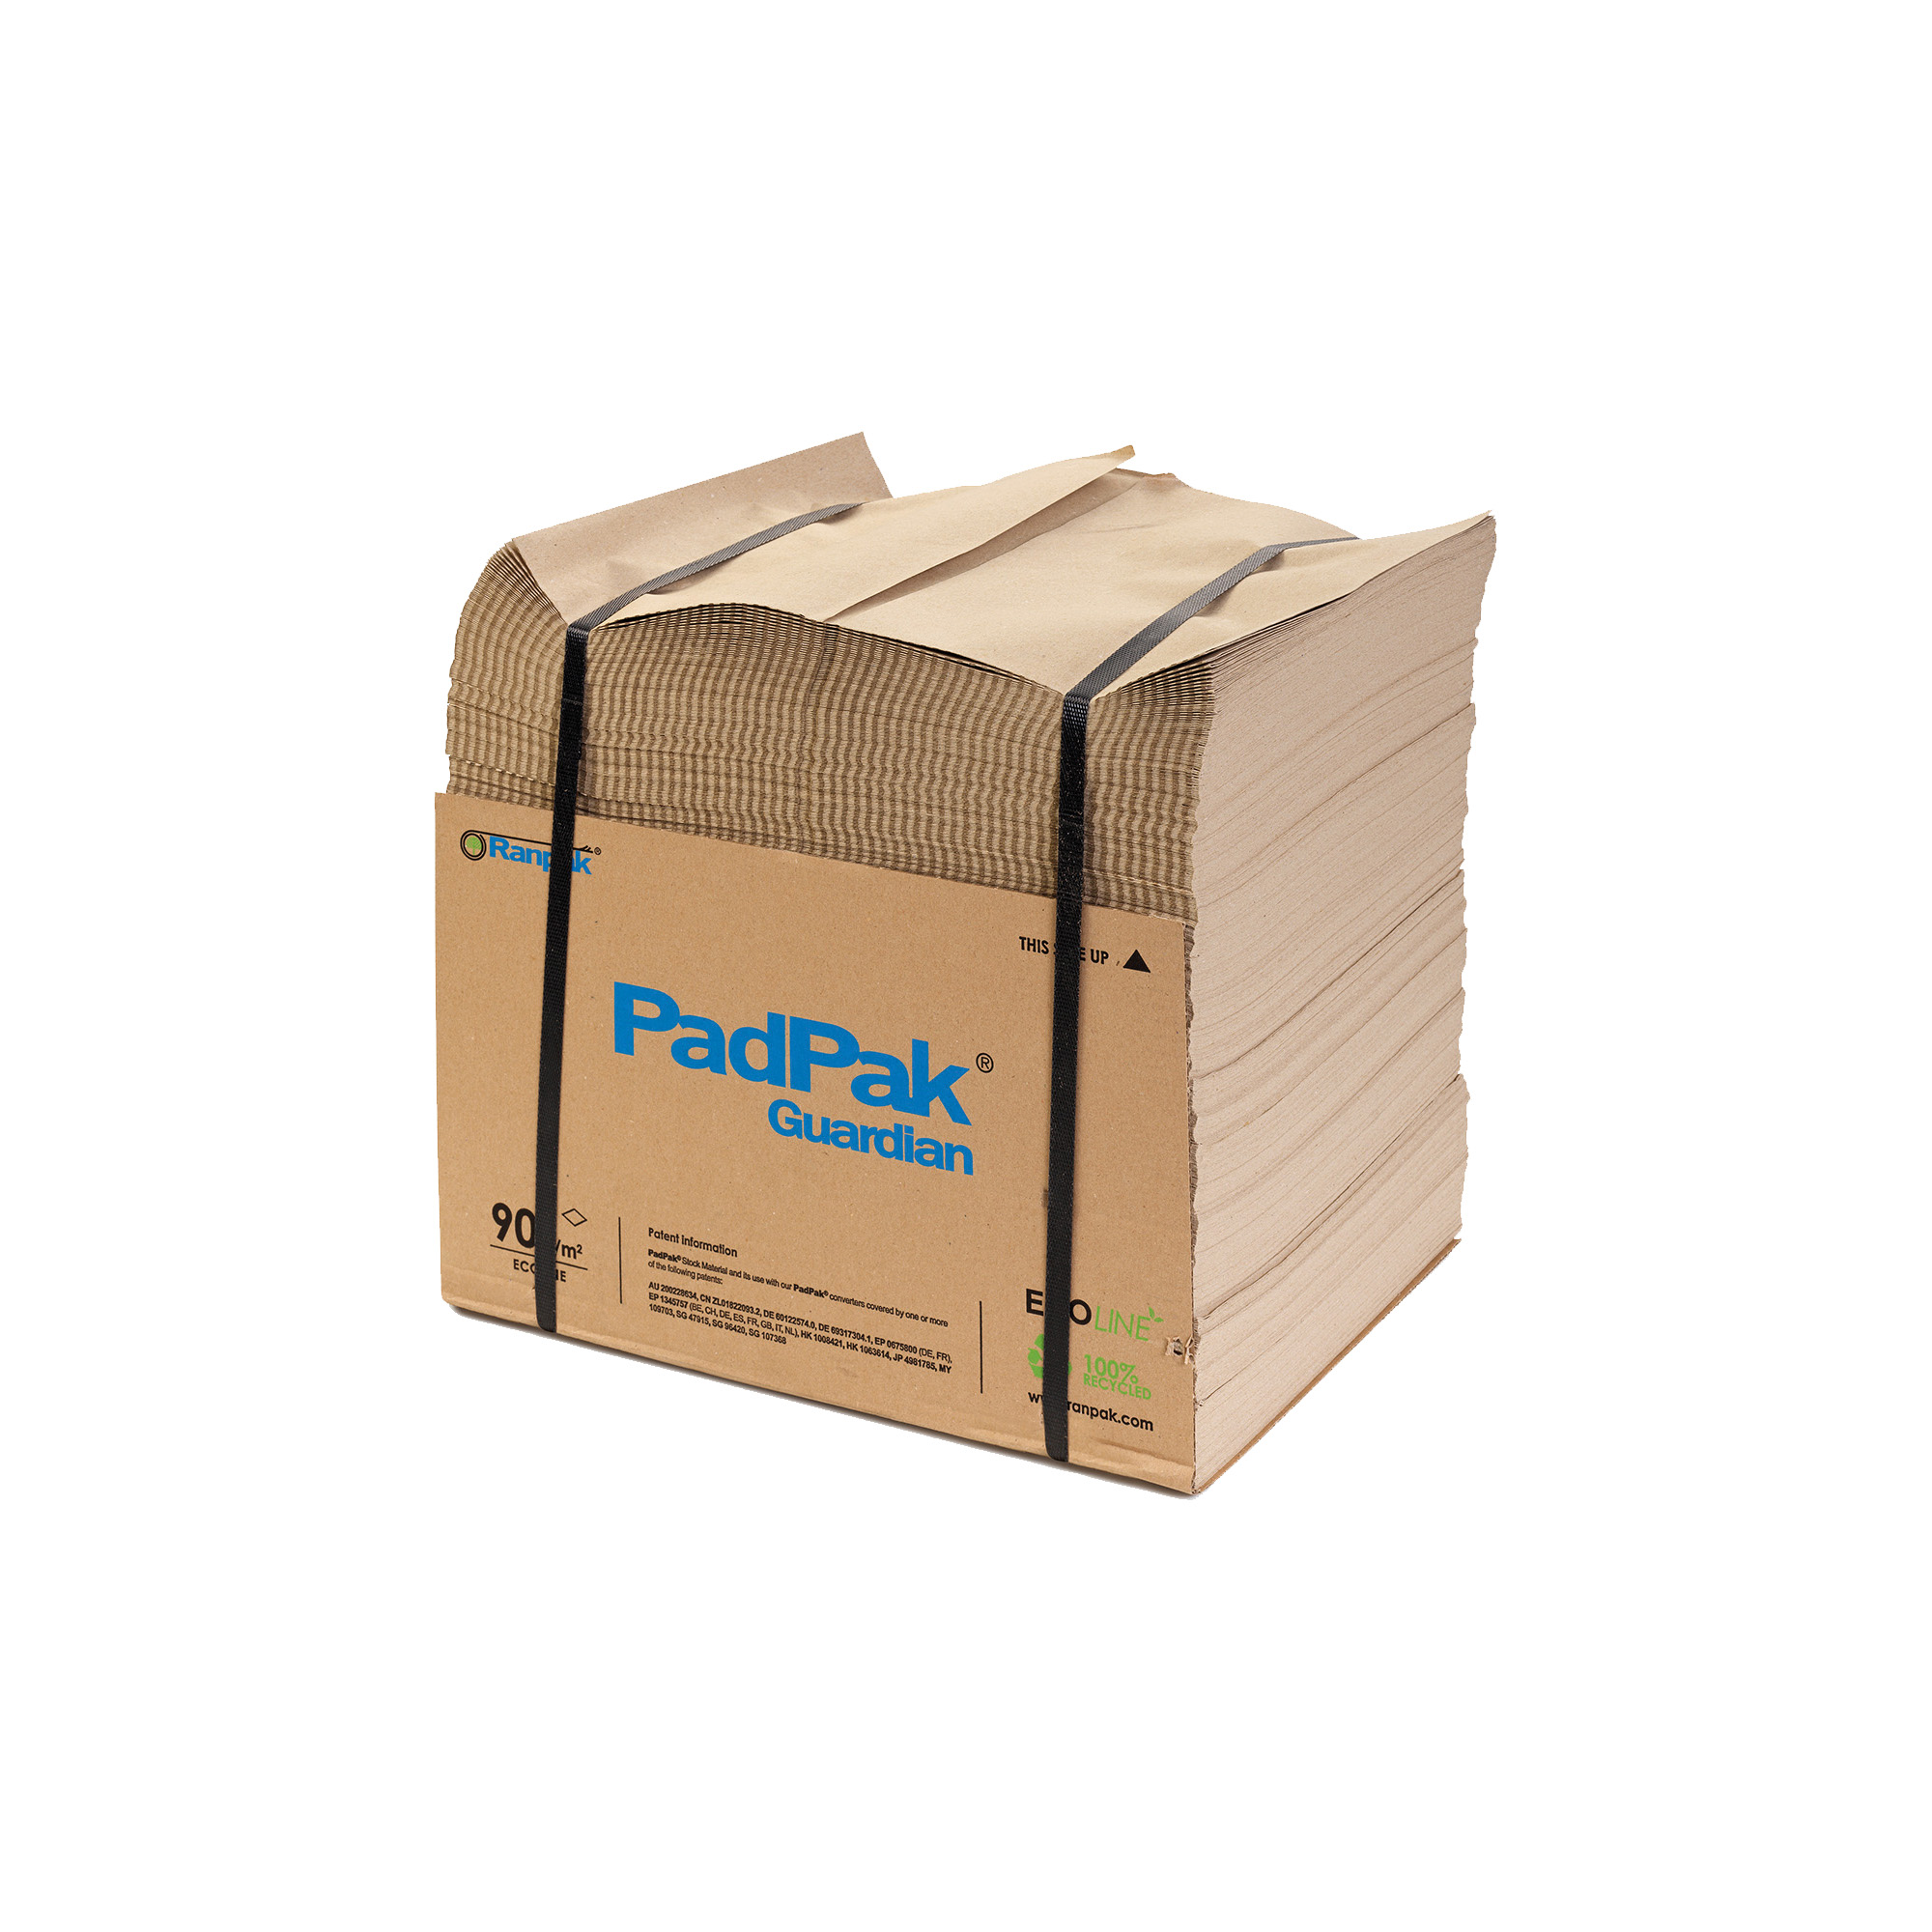 PadPak Guardian Papier 1-lagig, 90g Ecoline, 38cm breit, 300lfm., ca. 21kg